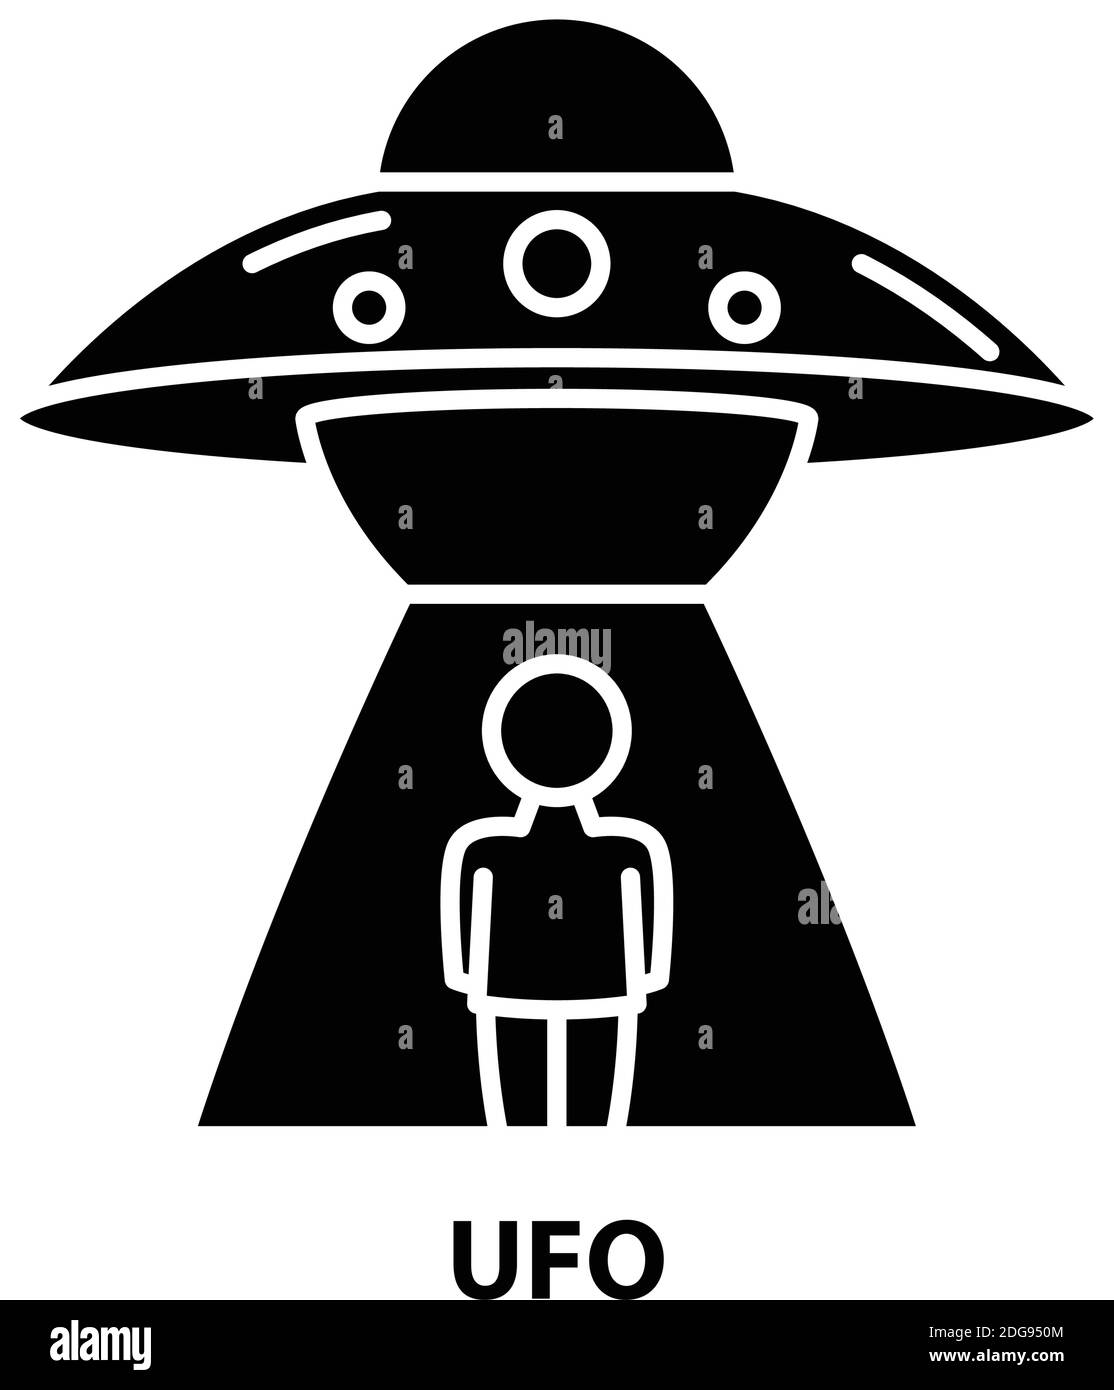 ufo-Symbol, schwarzes Vektorzeichen mit editierbaren Konturen, Konzeptdarstellung Stock Vektor